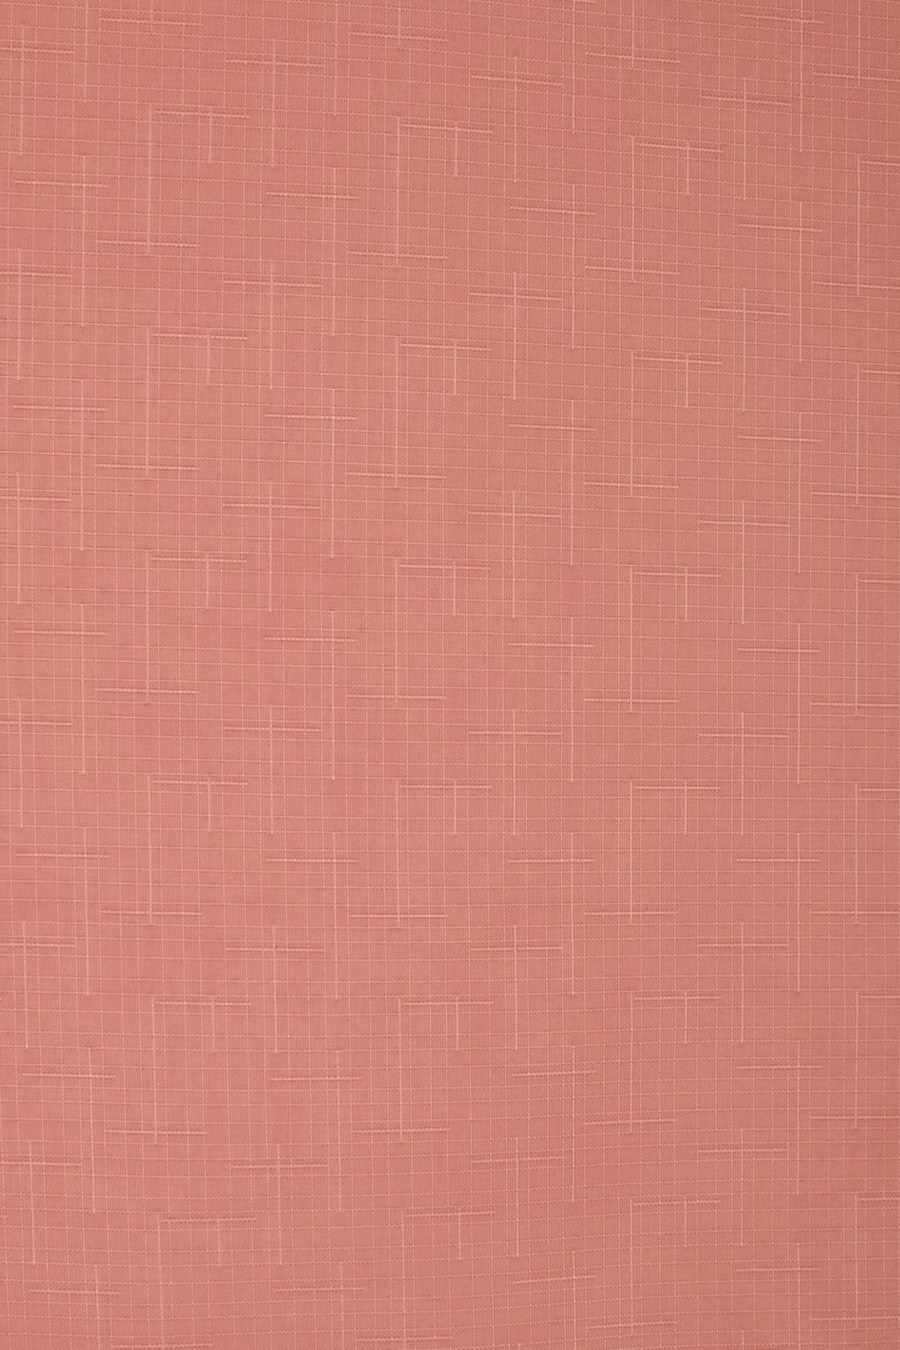 Ткань SUNTIME LEN розовый 2652 для рольштор